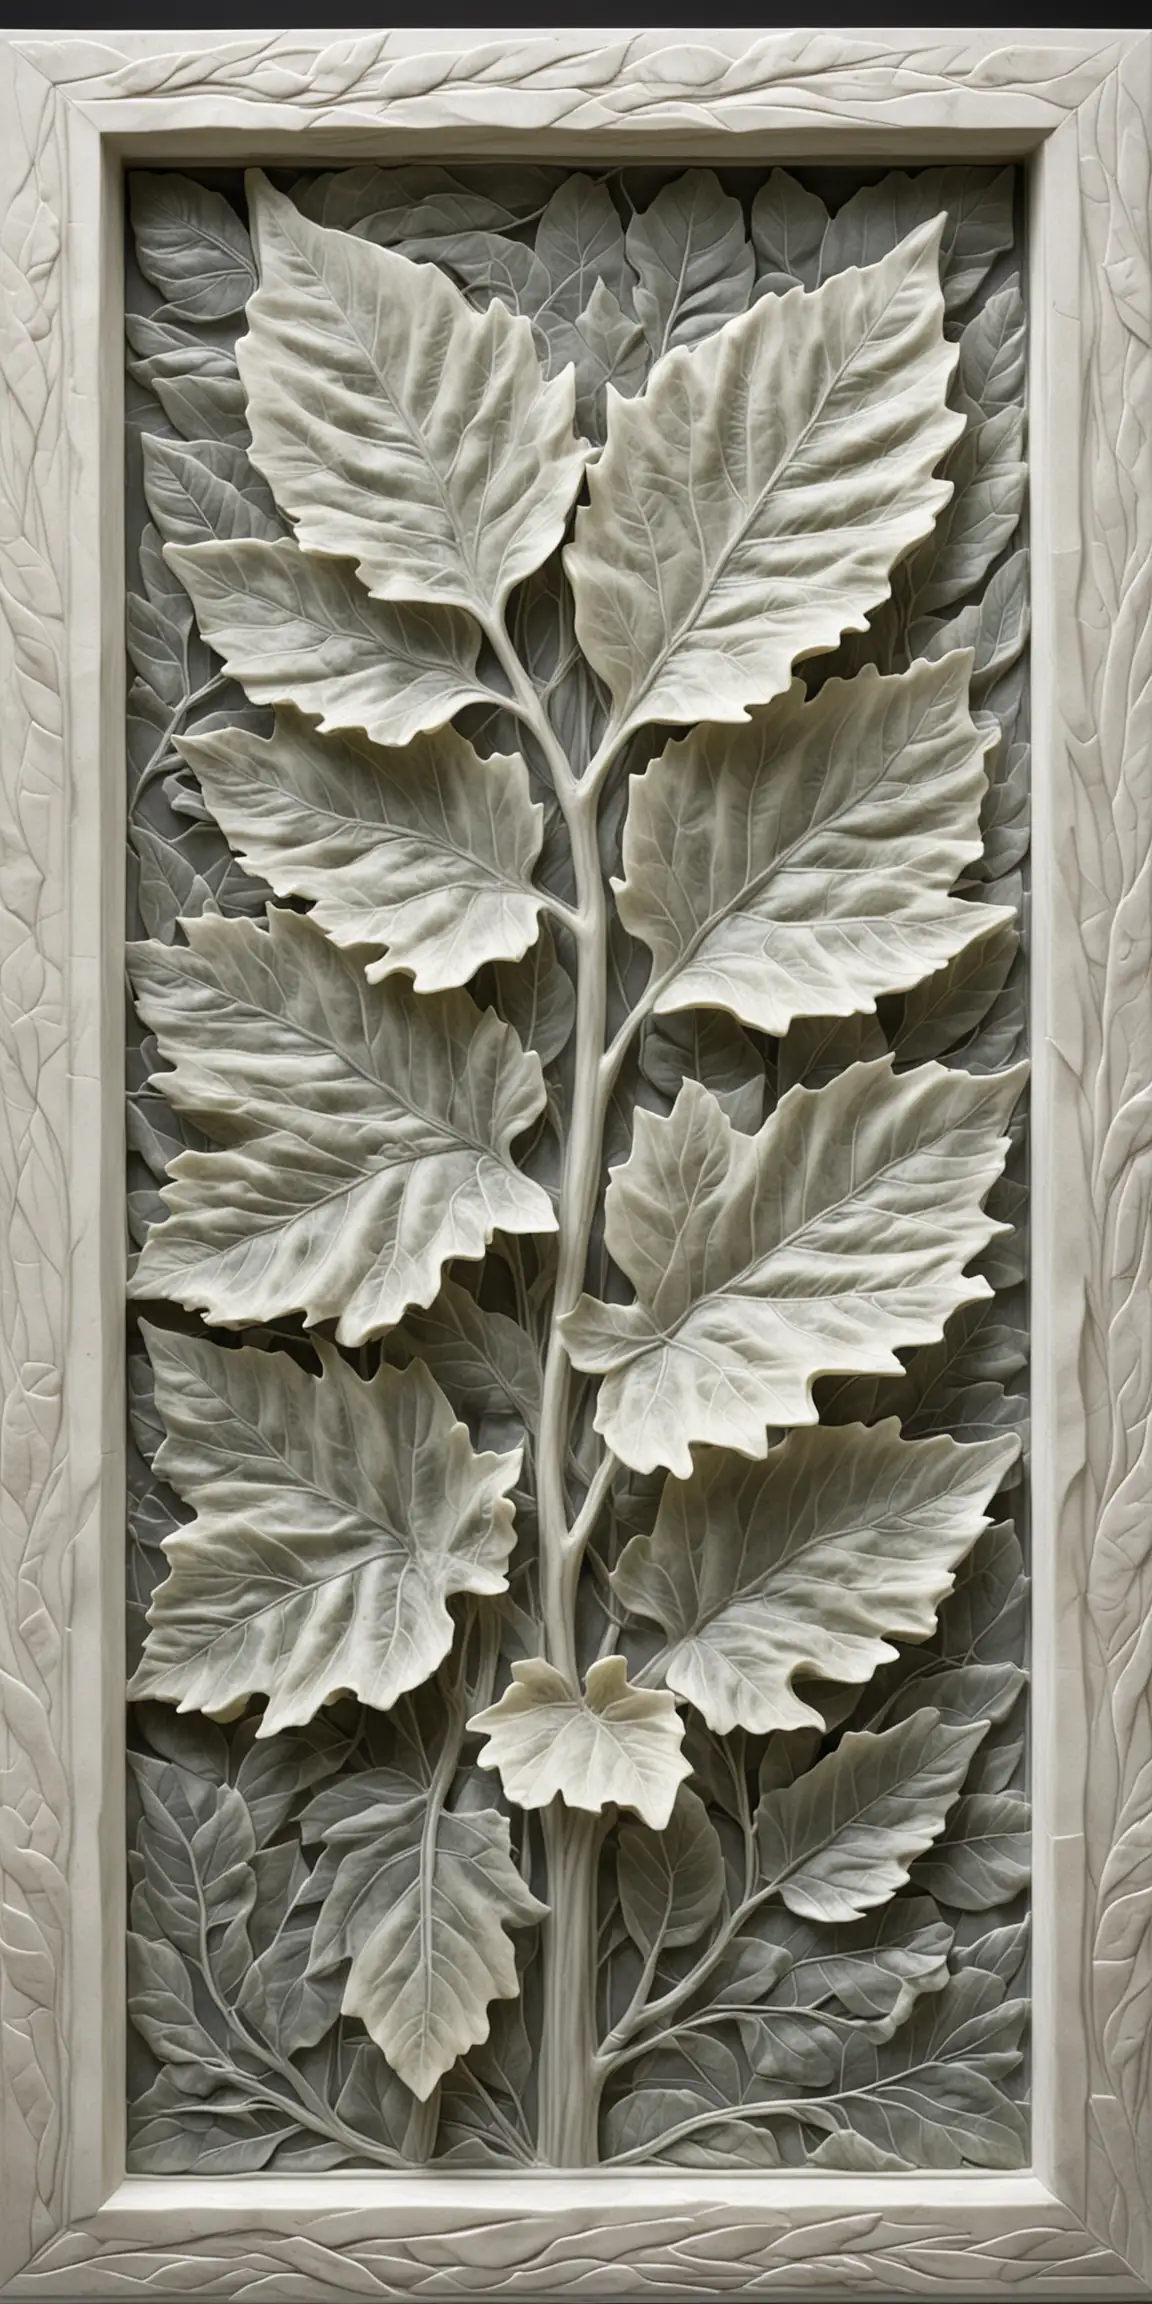 Botanical Vines Carved in Translucent Alabaster Elegant Relief Sculpture with Fig Leaves